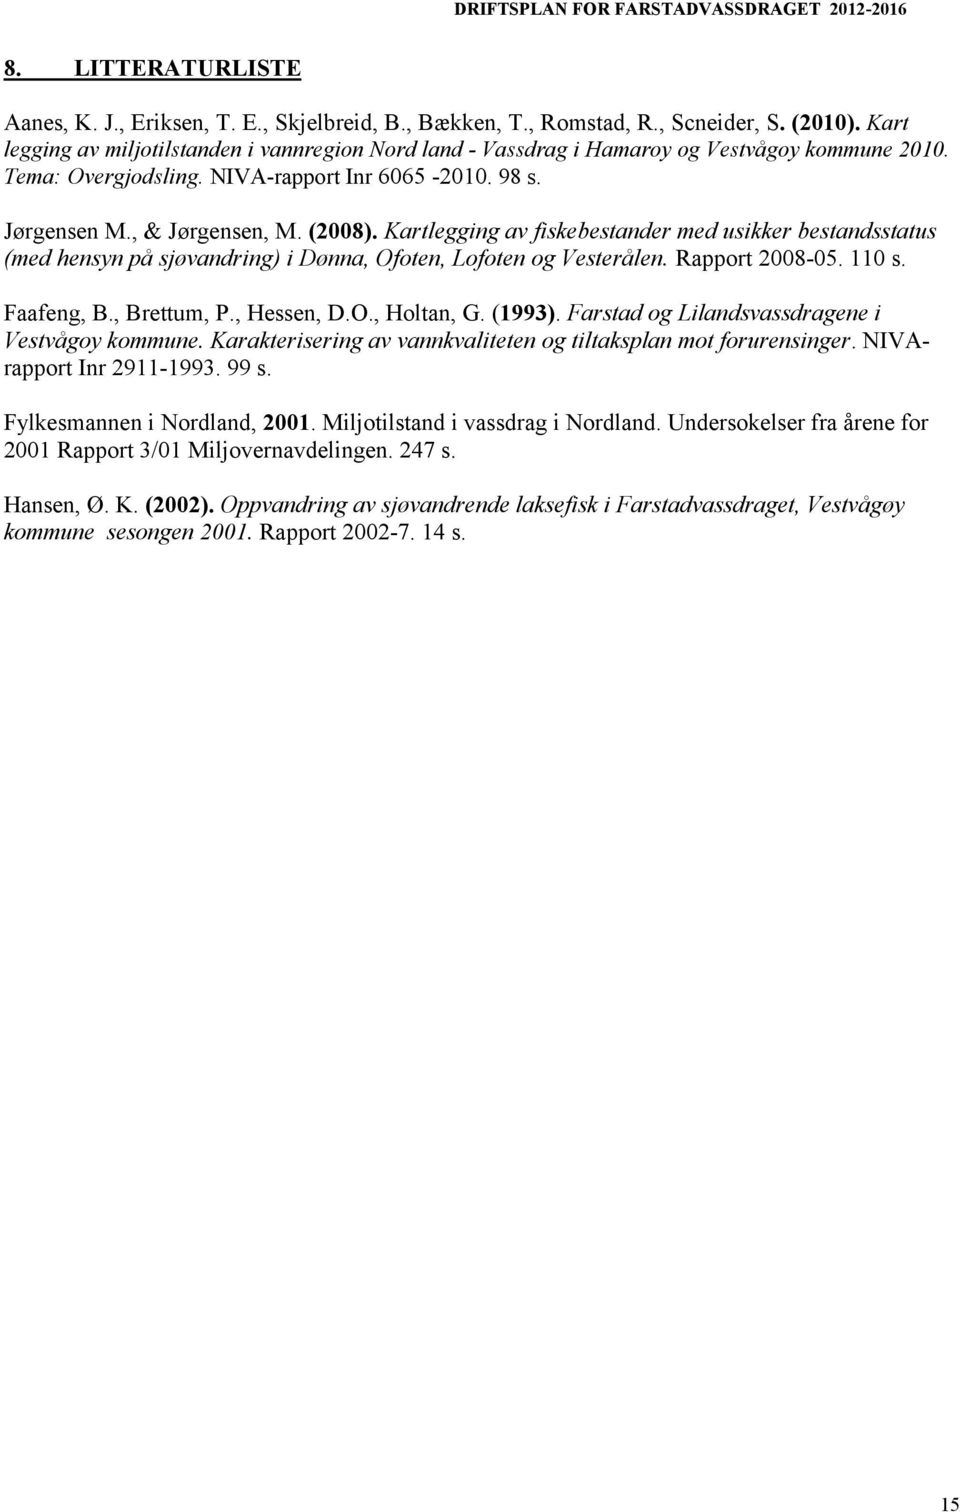 Kartlegging av fiskebestander med usikker bestandsstatus (med hensyn på sjøvandring) i Dønna, Ofoten, Lofoten og Vesterålen. Rapport 2008-05. 110 s. Faafeng, B., Brettum, P., Hessen, D.O., Holtan, G.